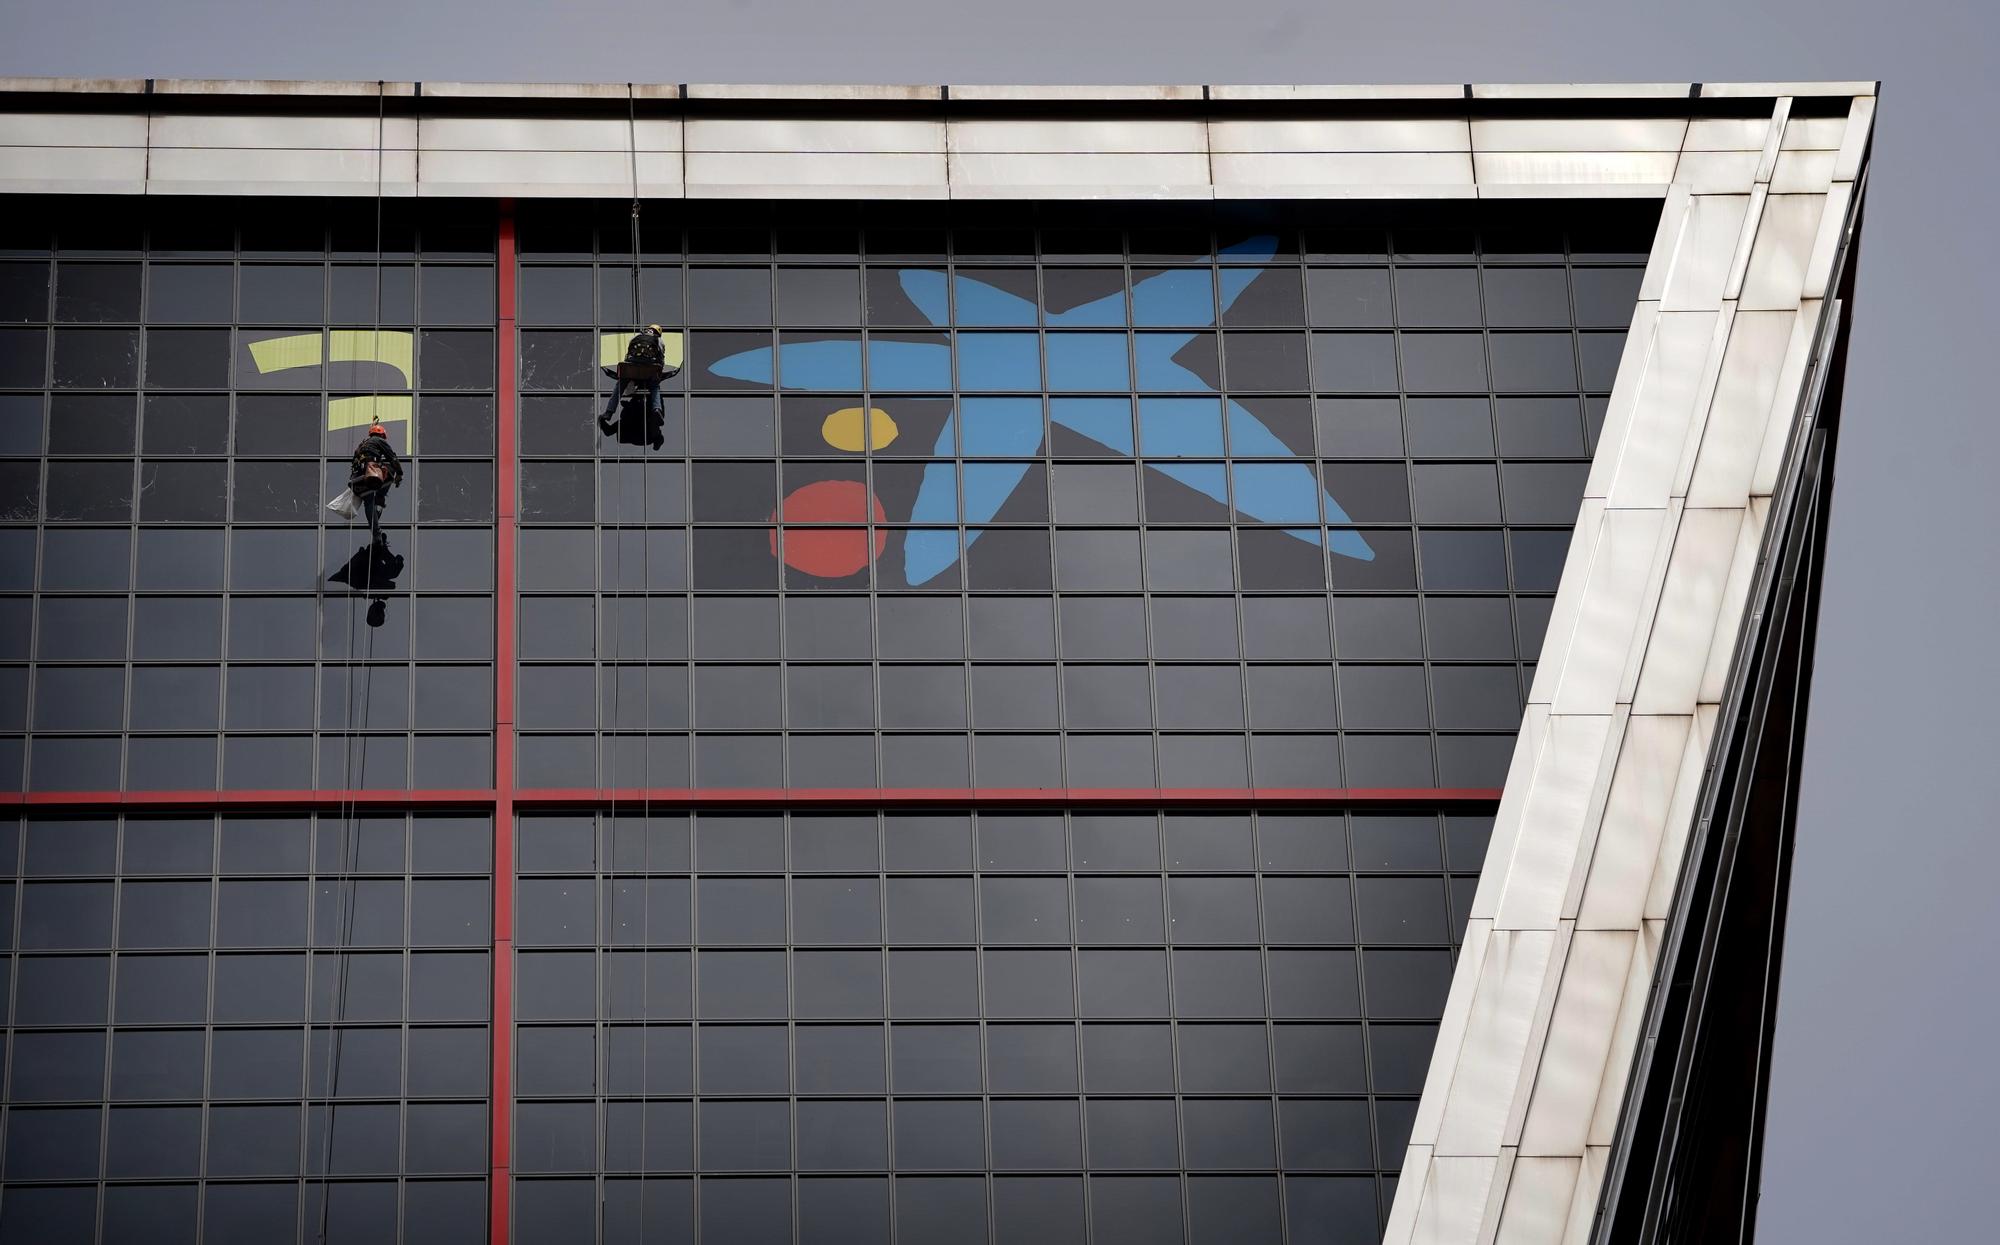 El logo de CaixaBank ya luce en la Torre Kio que albergaba la sede central de Bankia en Madrid